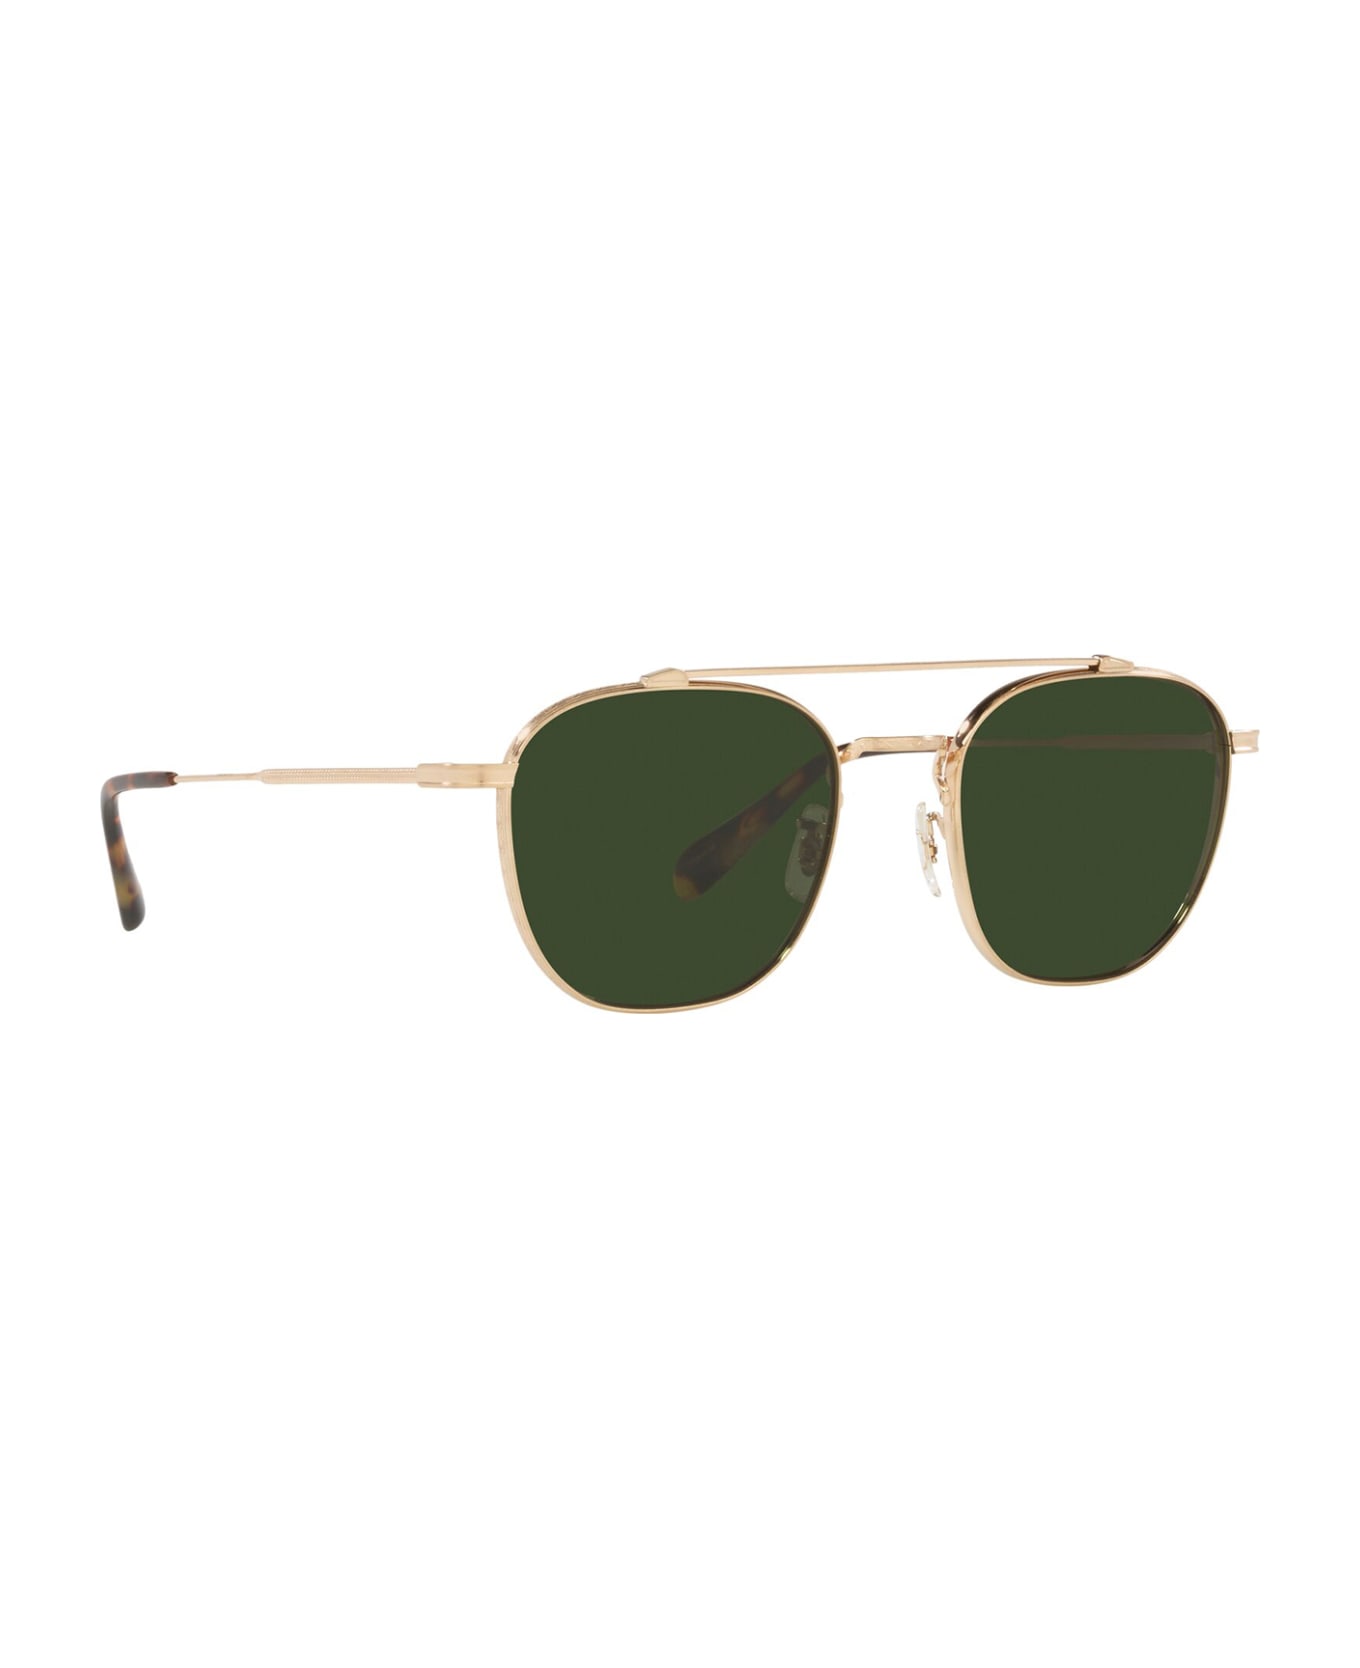 Oliver Peoples Ov1294st Brushed Gold Sunglasses - Brushed Gold